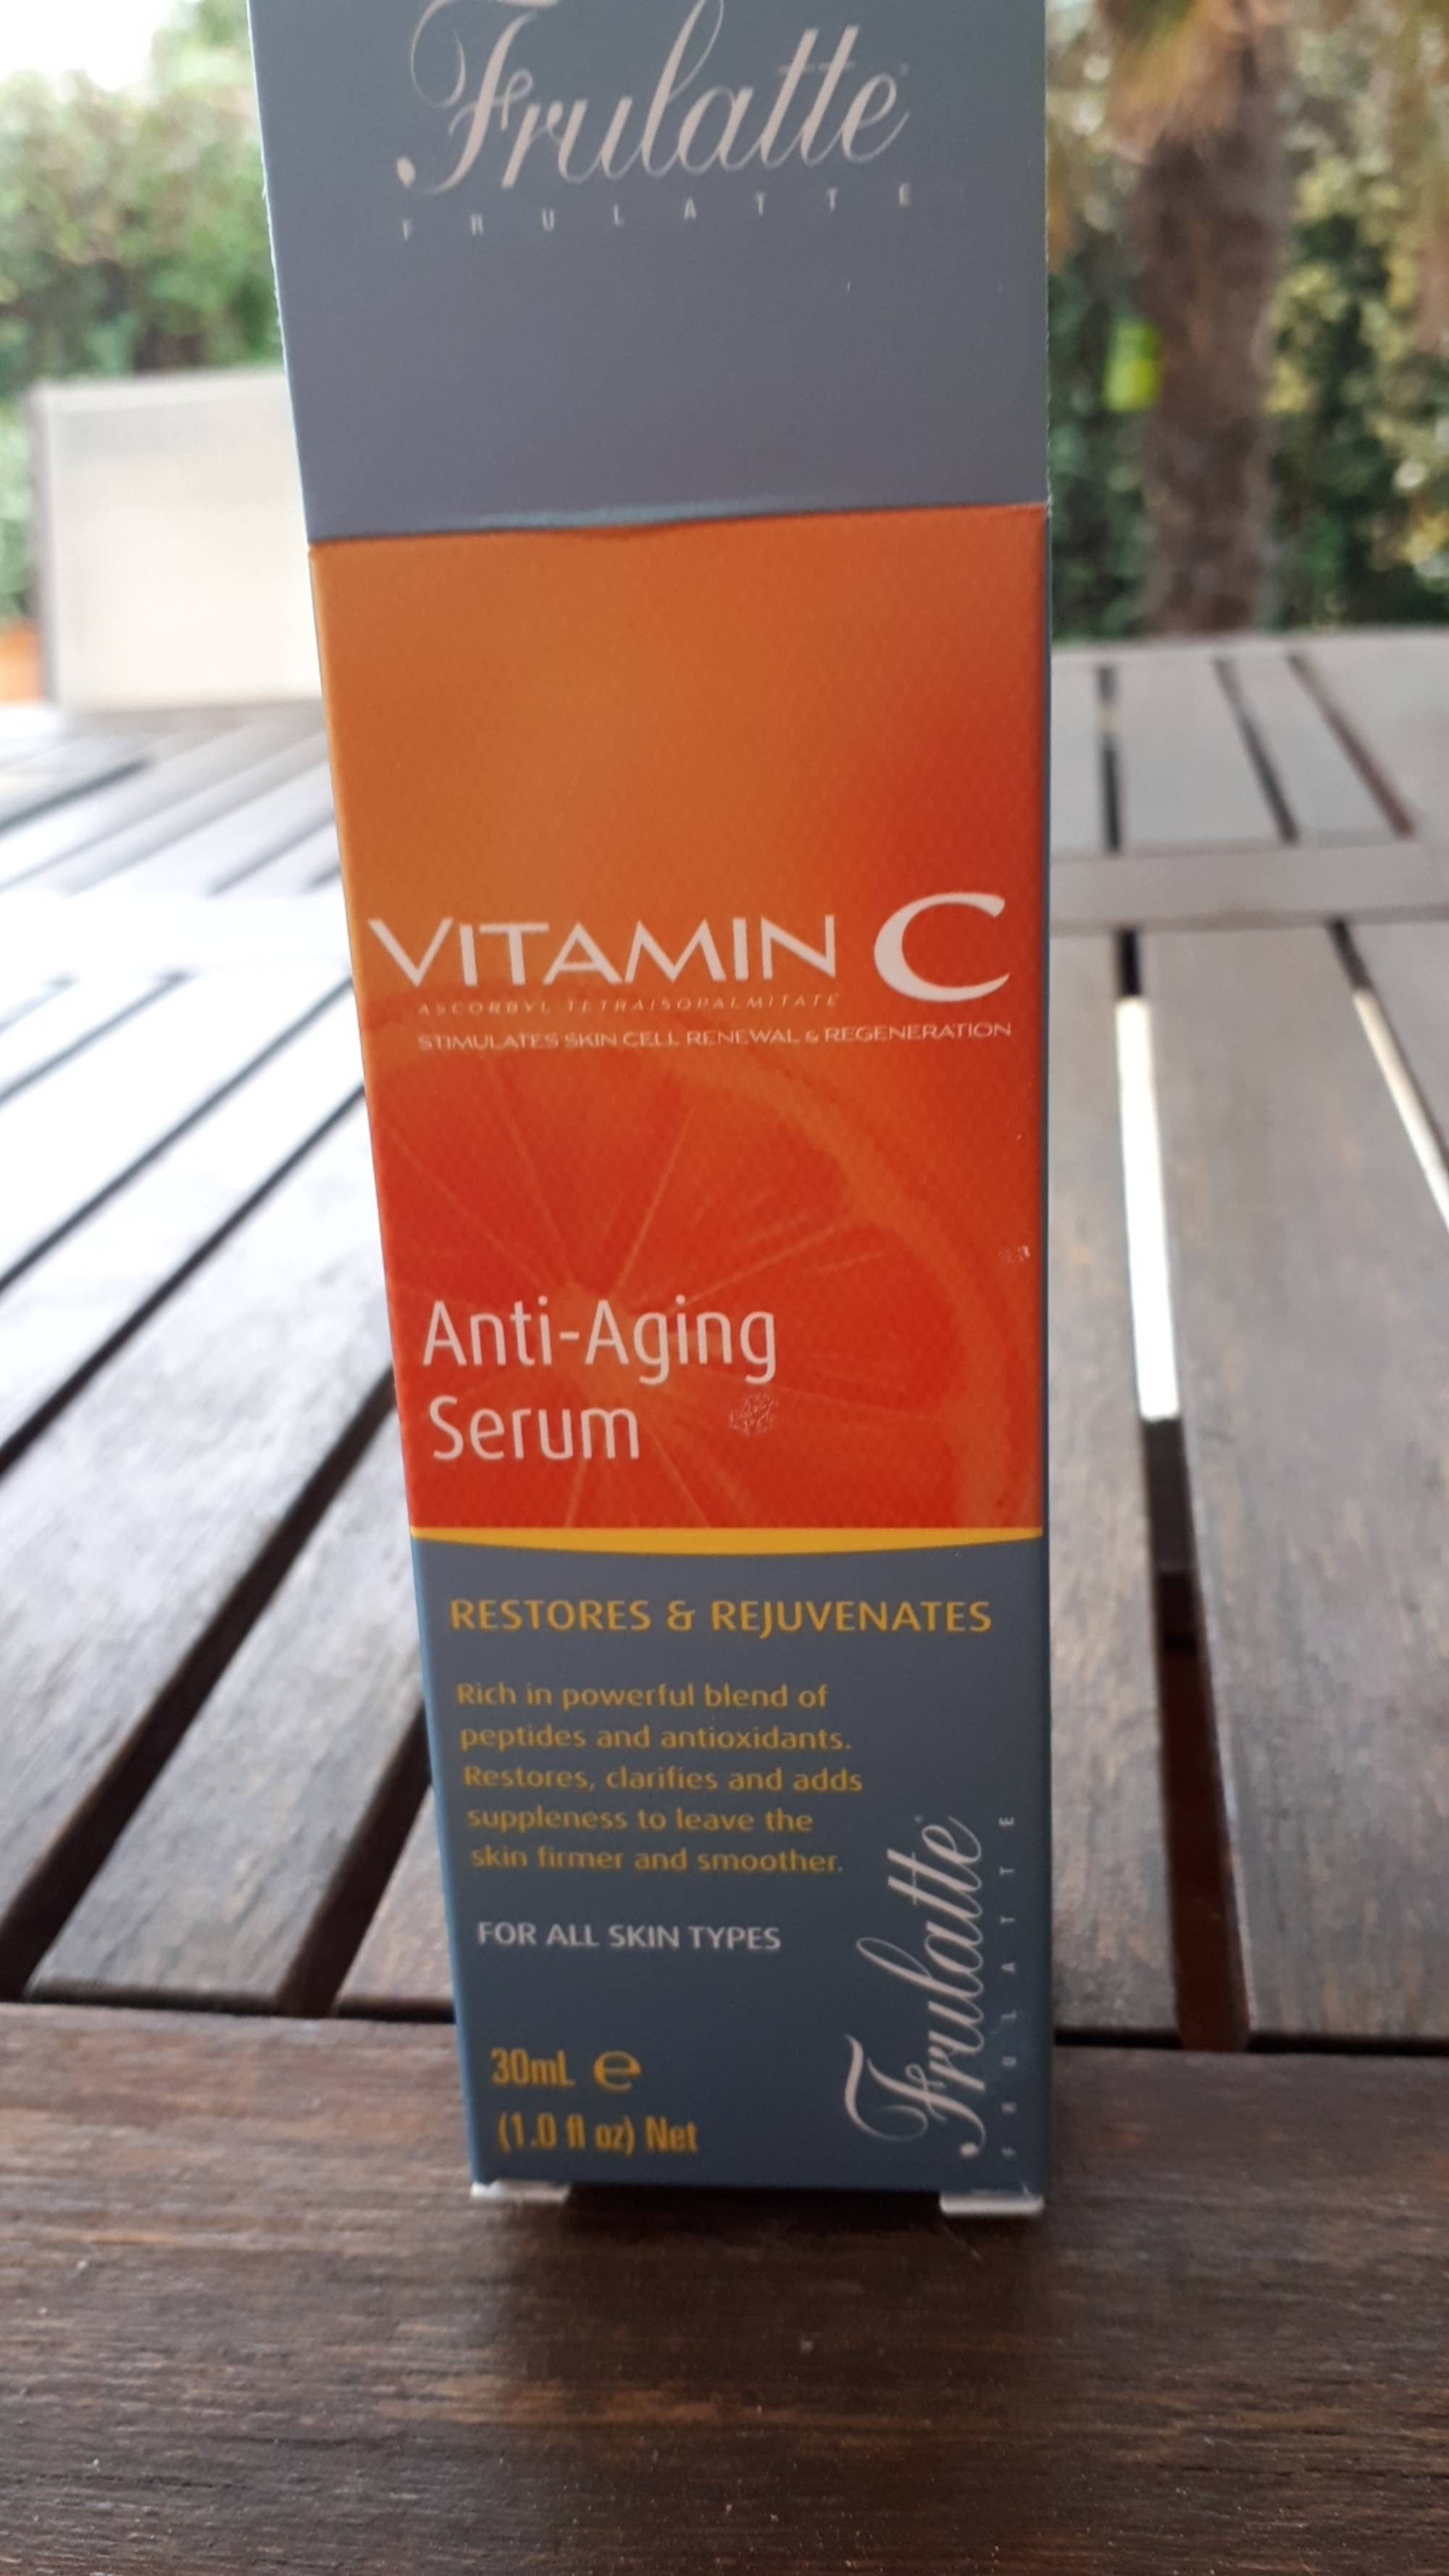 FRULATTE - Vitamic C - Anti-aging serum